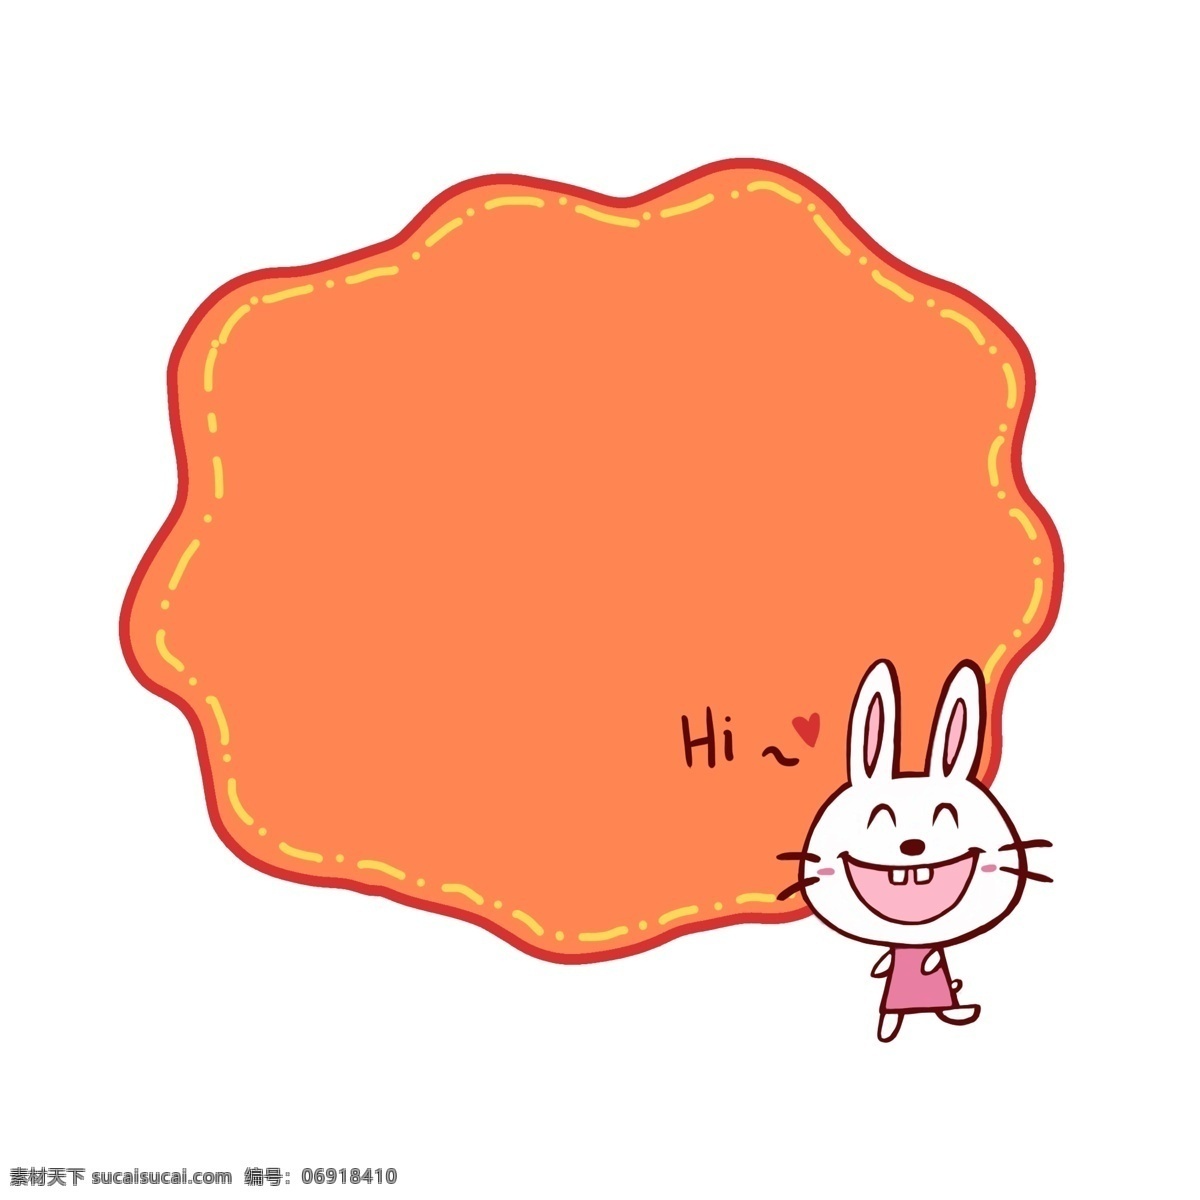 橙色 可爱 兔子 边框 插画 彩色边框 橘黄色边框 动物边框 可爱的兔子 兔子边框插画 高兴的兔子 卡通文本边框